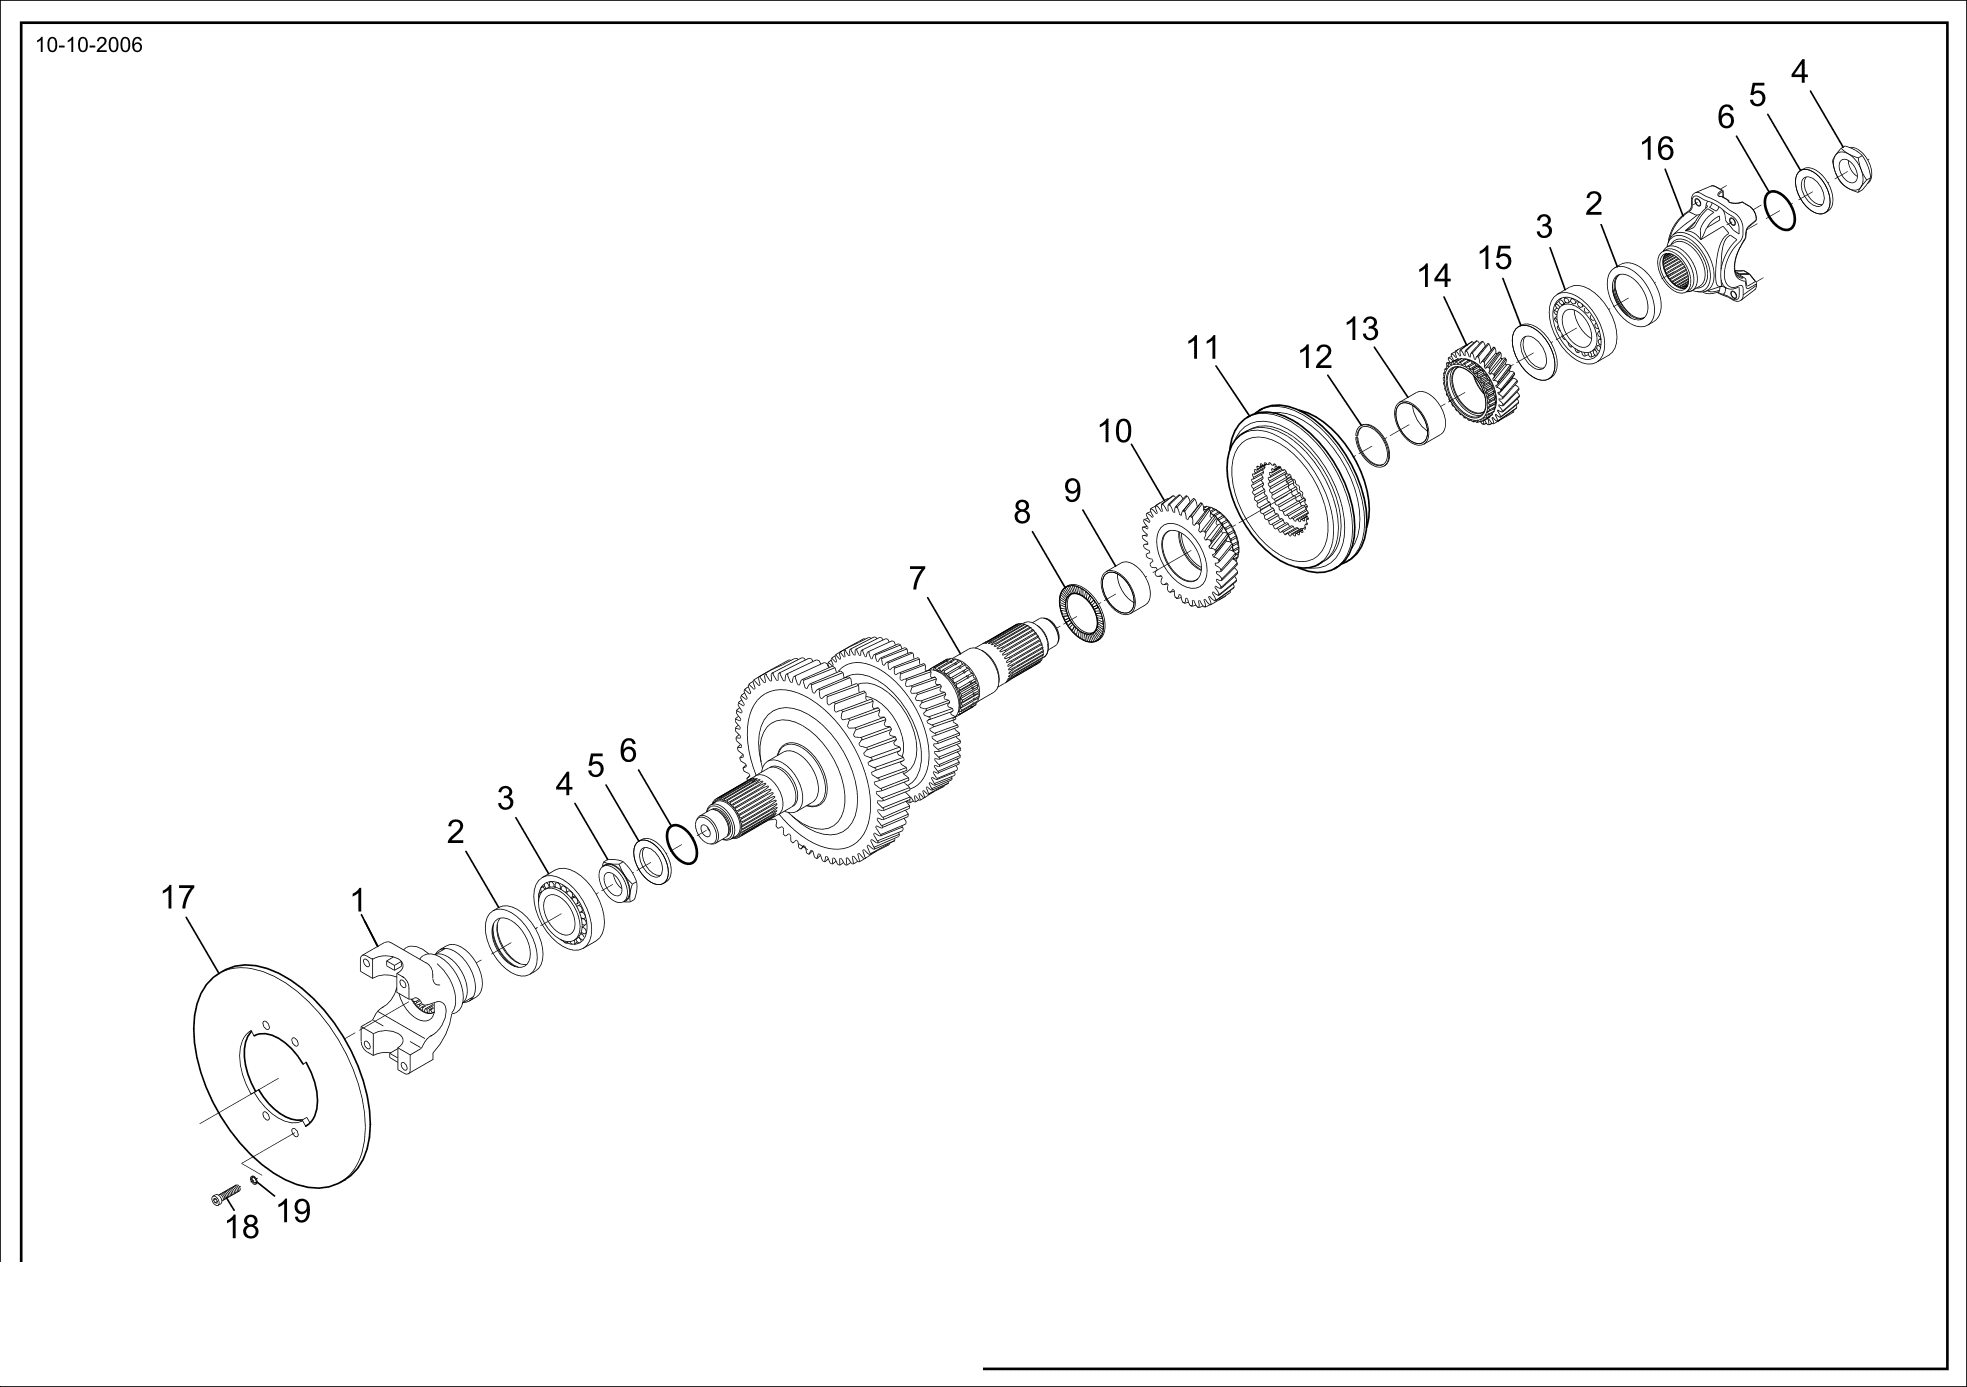 drawing for HOIST LIFT TRUCKS M04522 - OIL SEAL (figure 2)